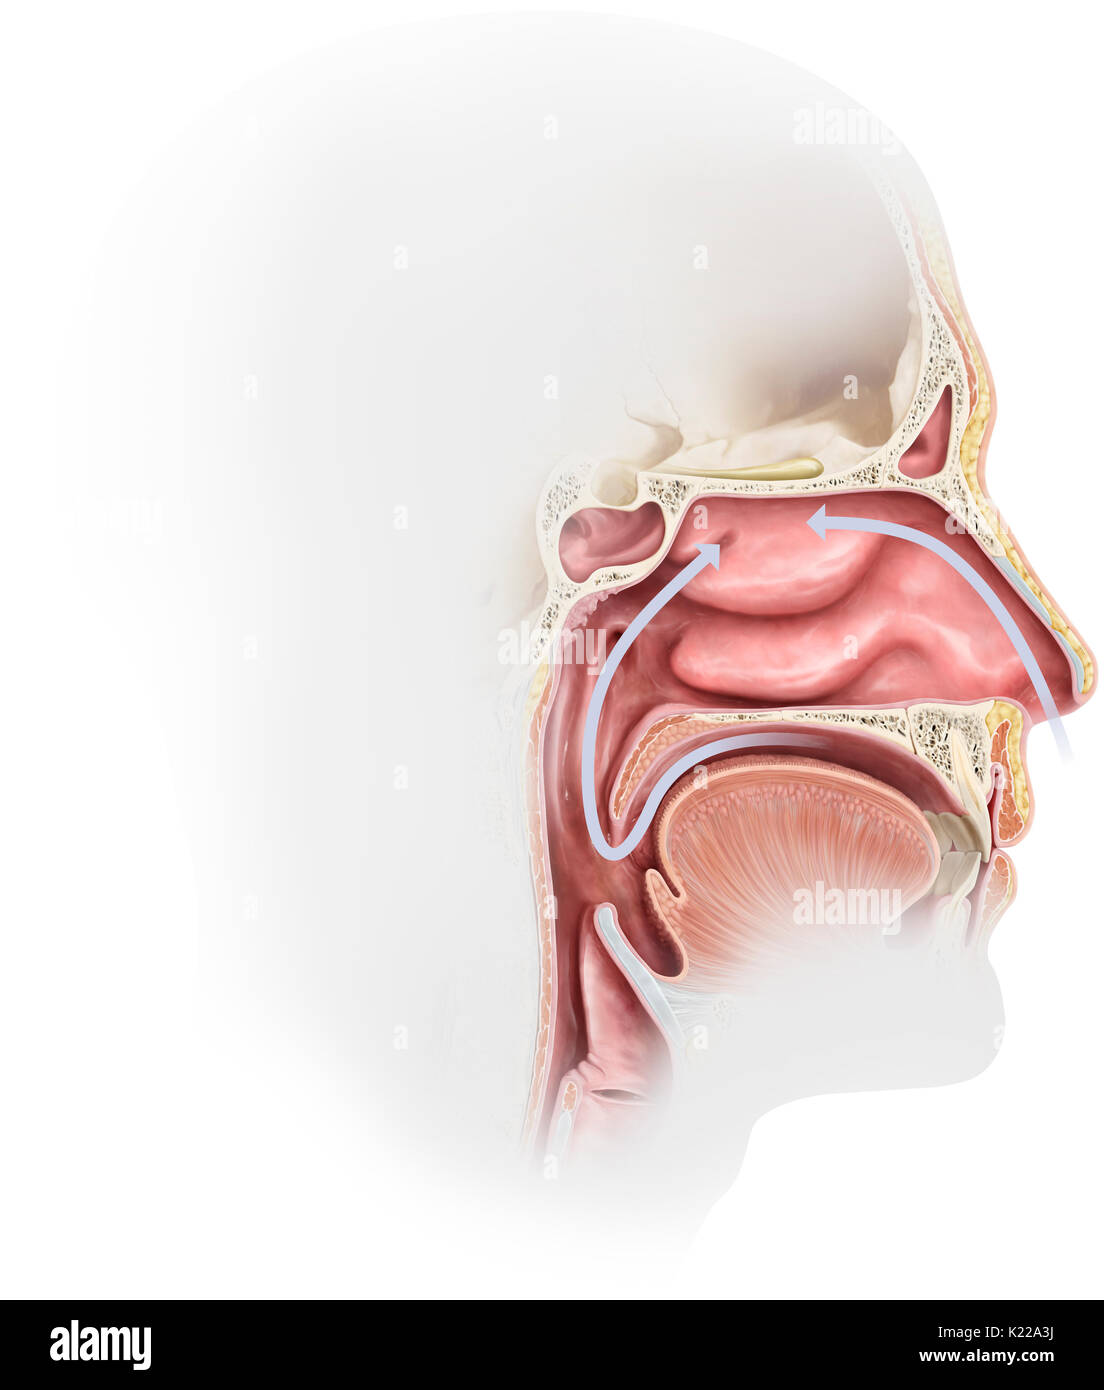 Las paredes de las cavidades nasales están recubiertas con una membrana mucosa que produce moco nasal. Las moléculas olorosas se disuelven en el moco nasal del epitelio olfatorio (o mucosa olfativa). Foto de stock